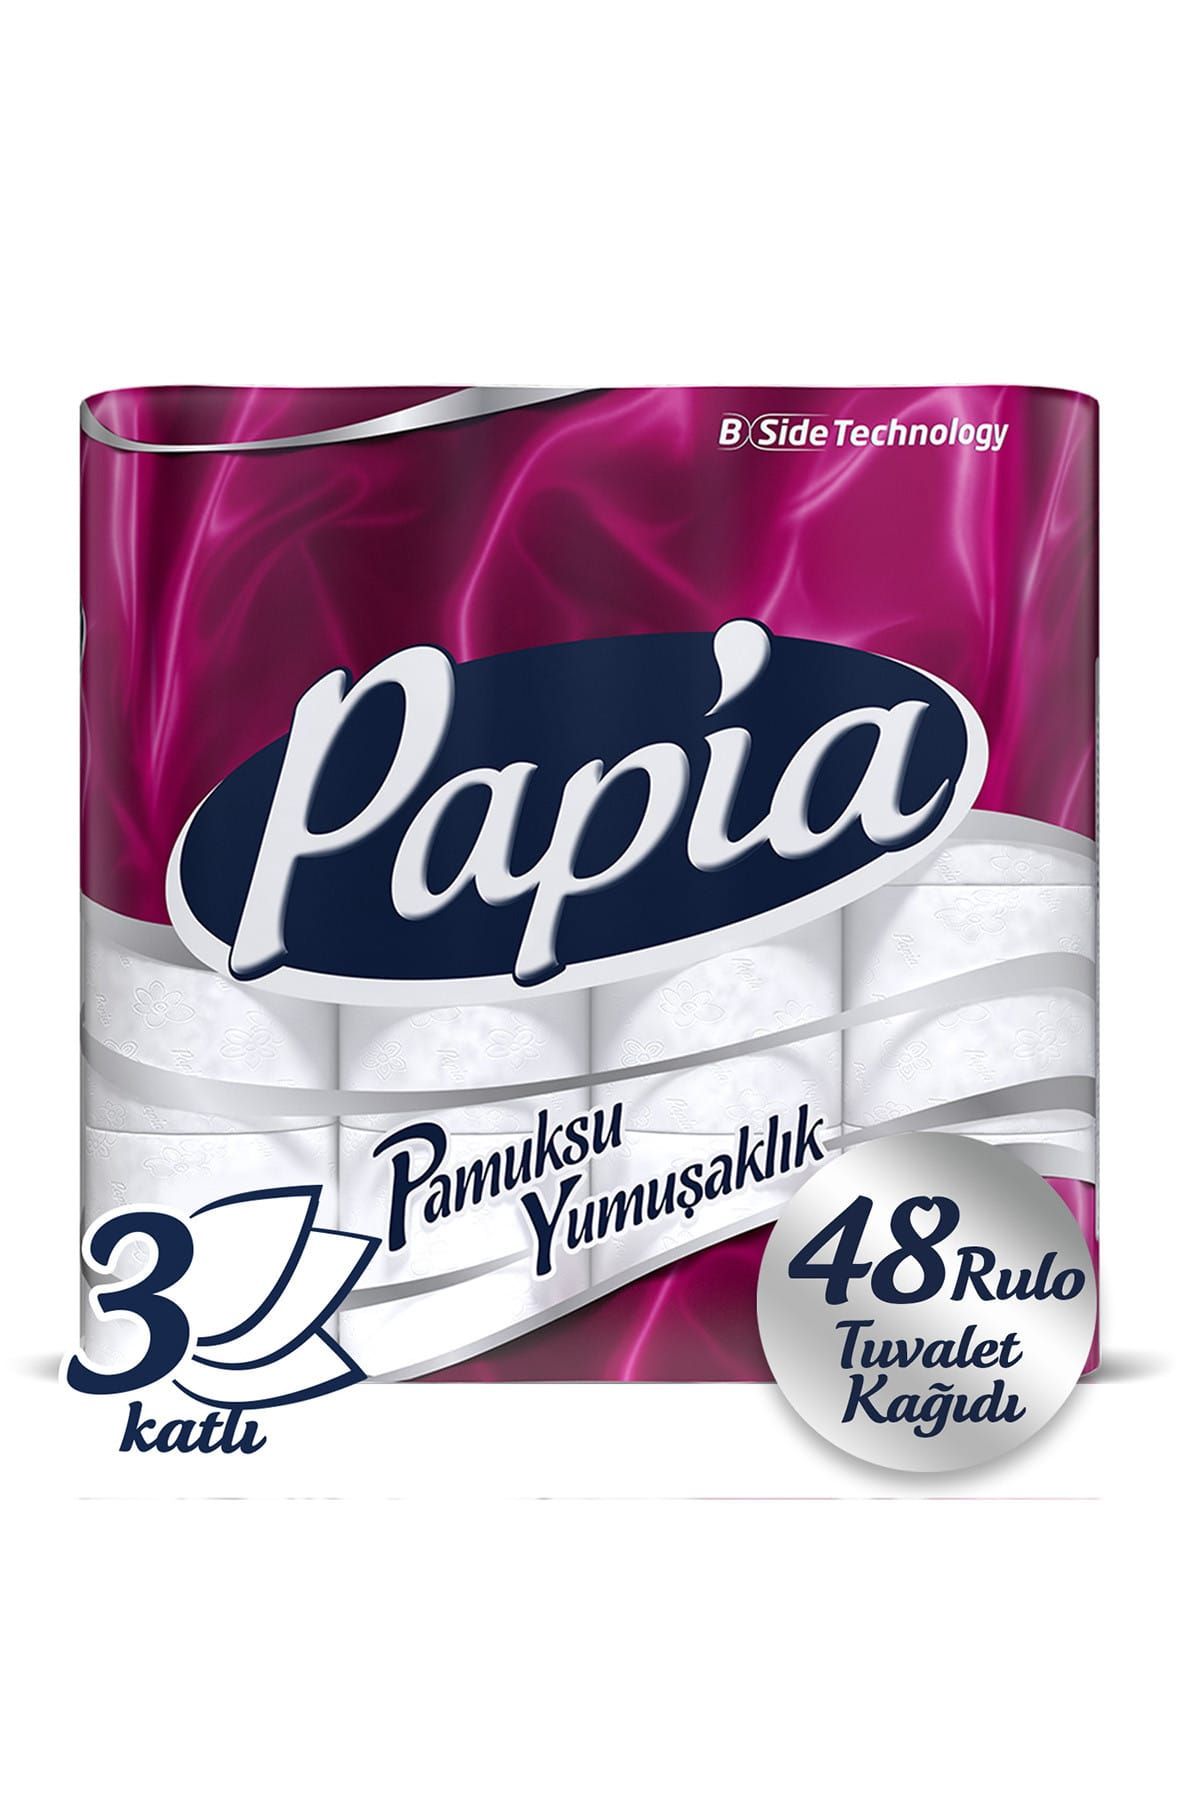 Papia Tuvalet Kağıdı Jumbo Paket 48 Rulo